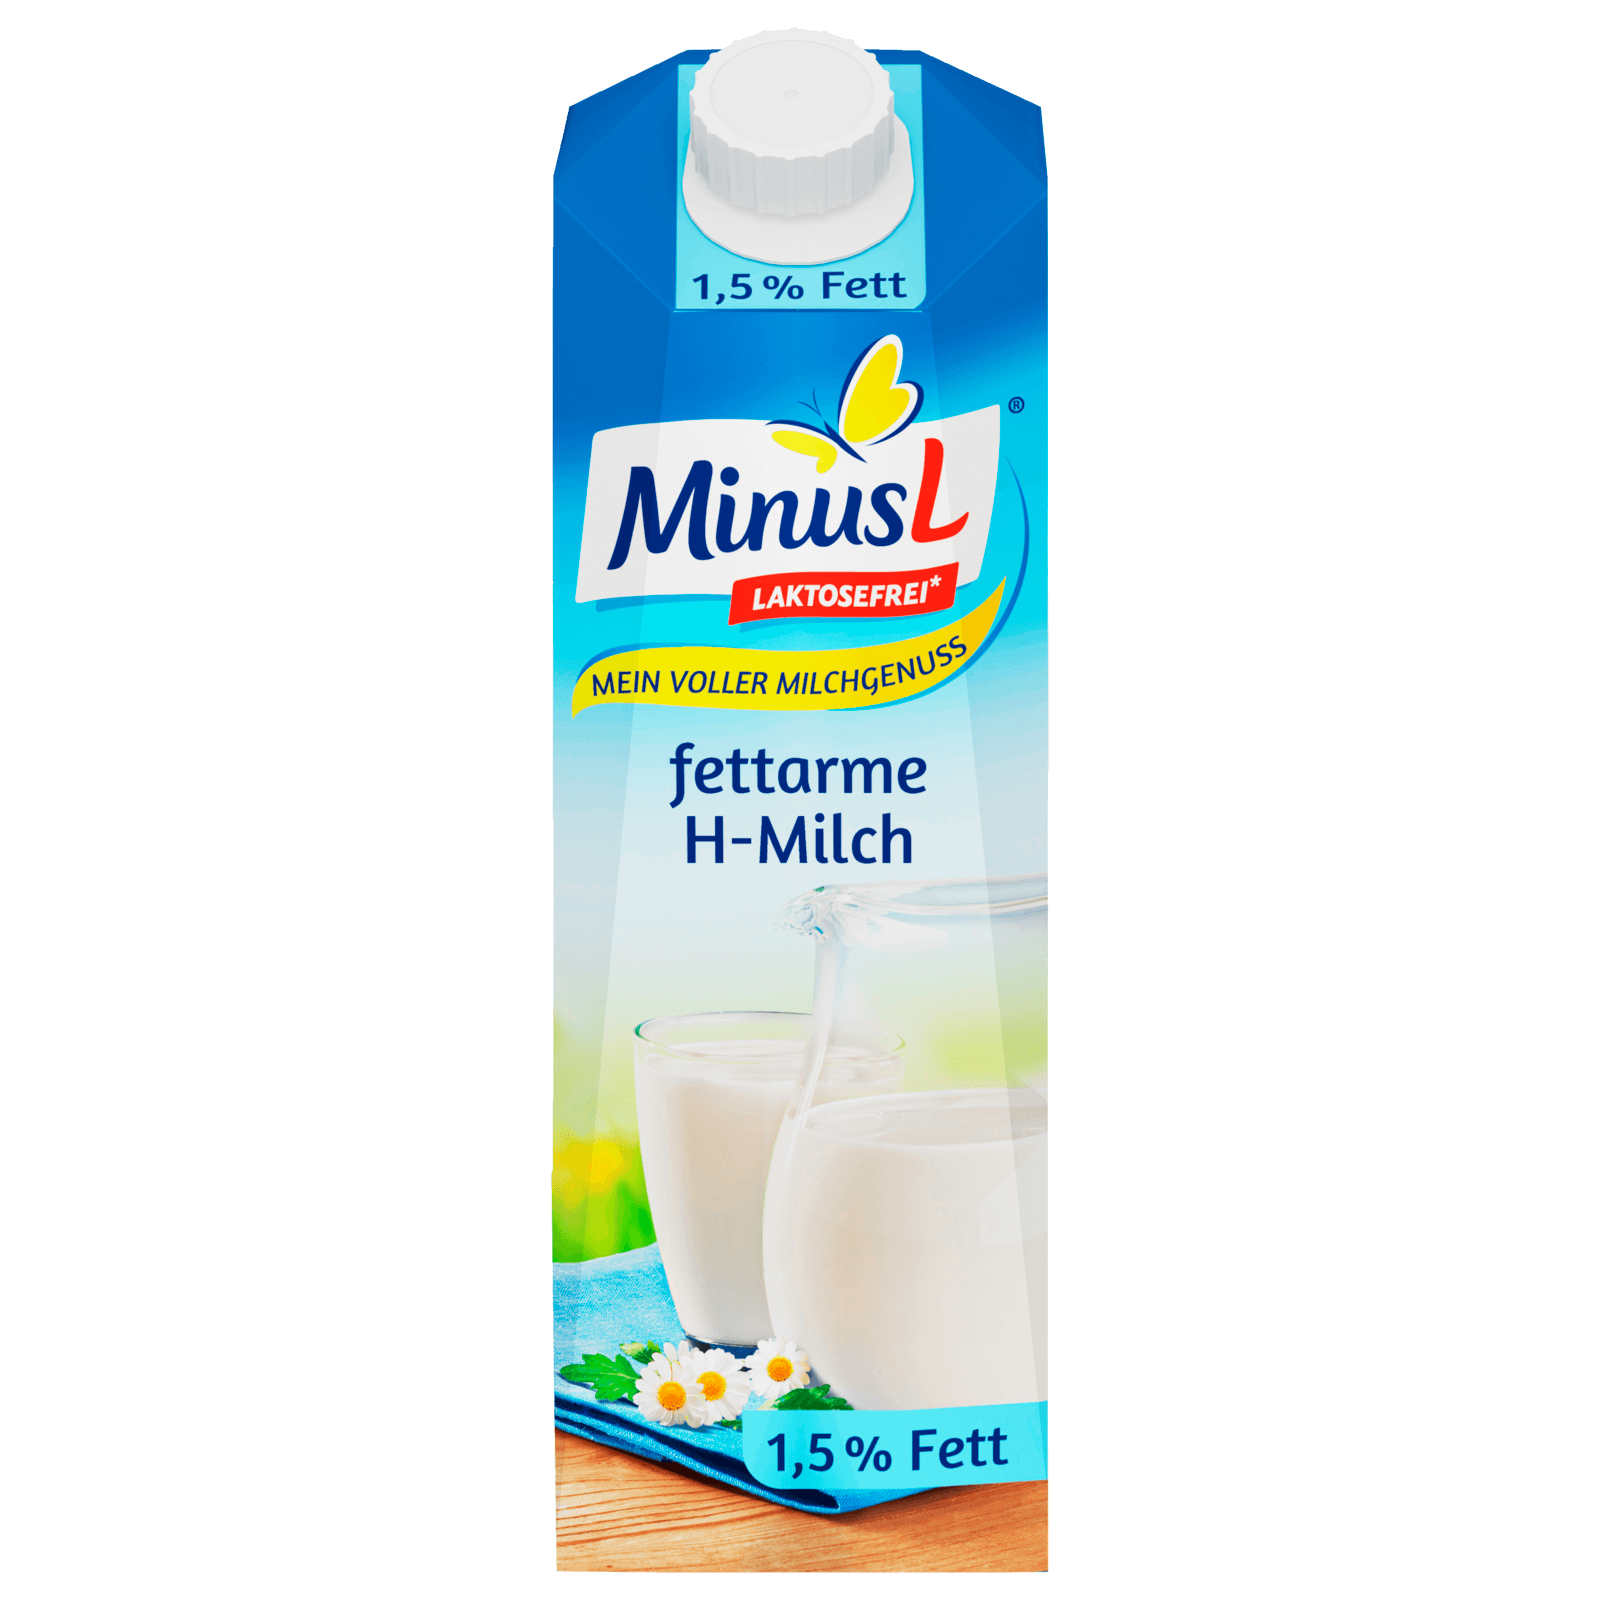 MinusL H-Milch laktosefrei 1,5% 1l bei REWE online bestellen!